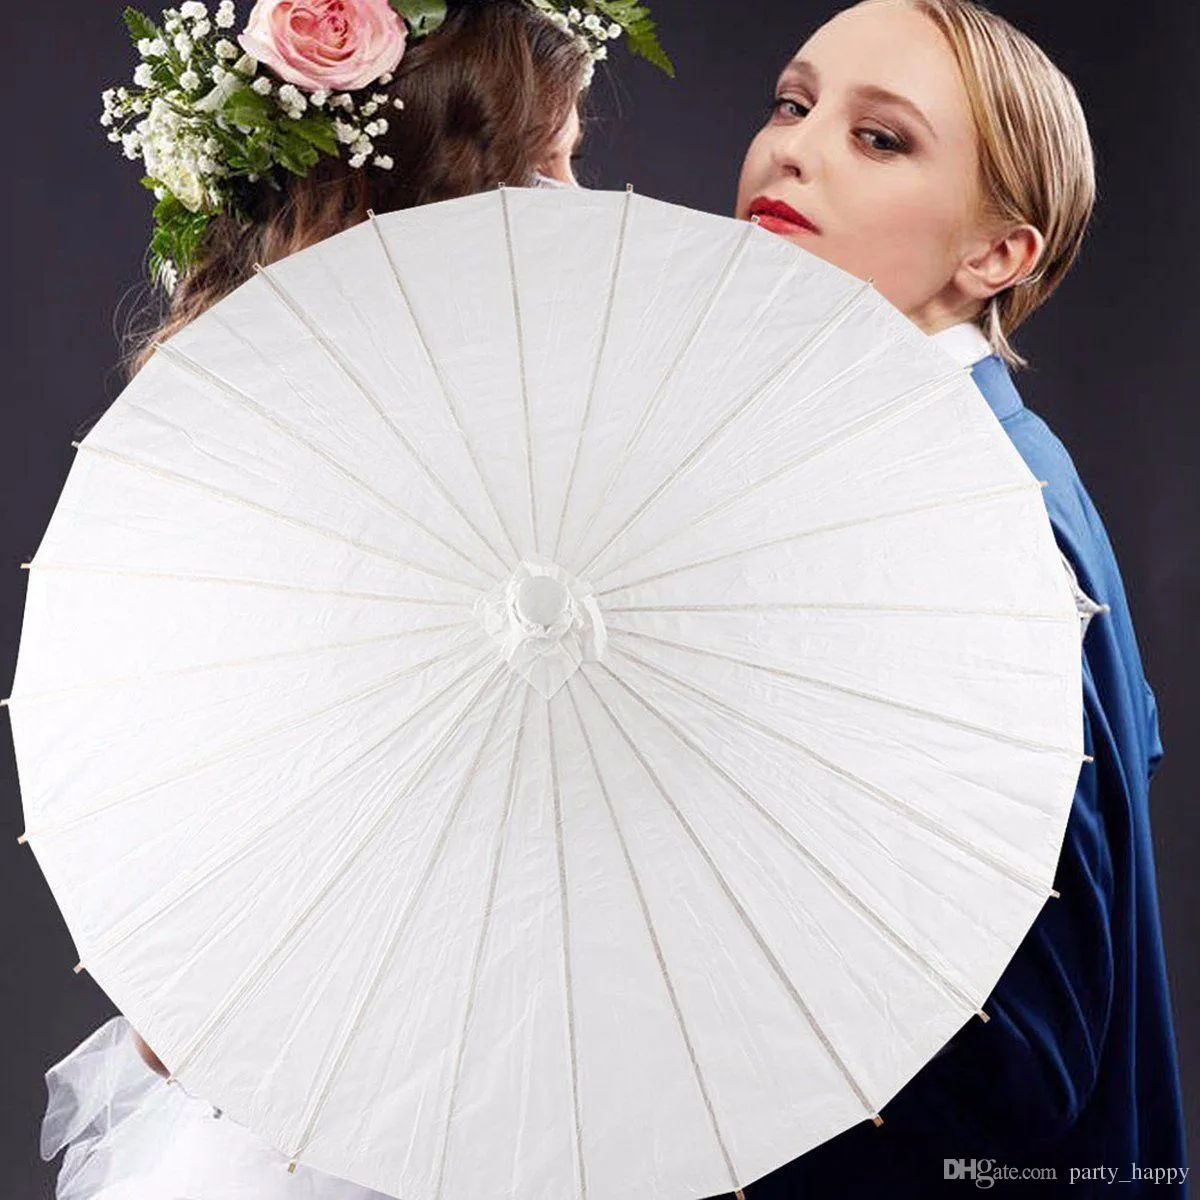 3 tamanho papel de bambu branco guarda-chuva parasol dança festa de casamento coasplay arte